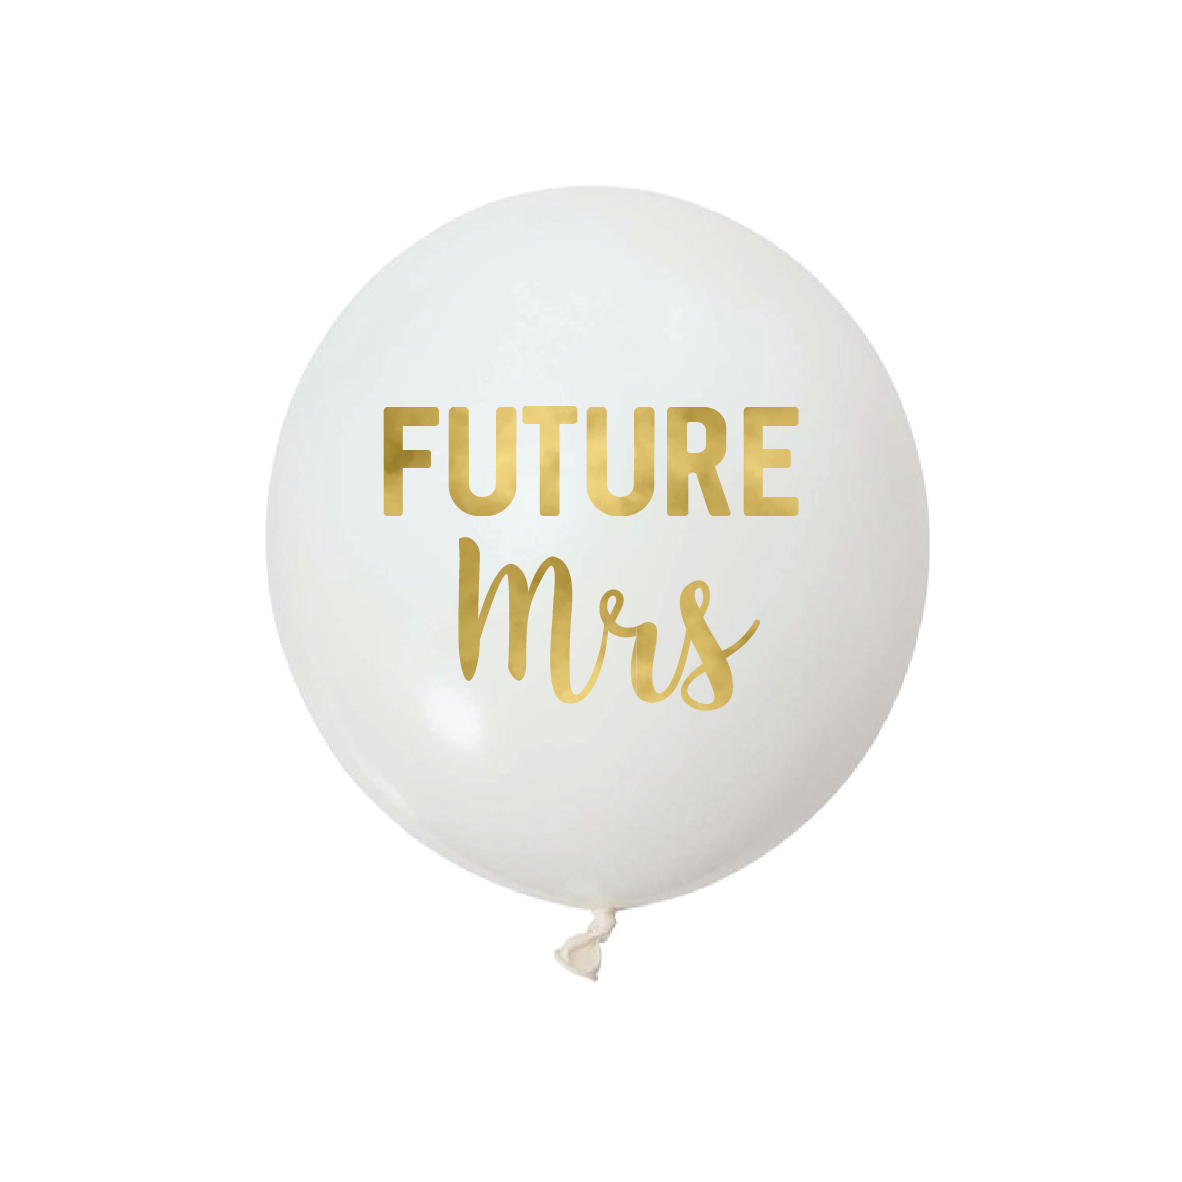 Future Mrs -  Vinyl Balloon Stickers